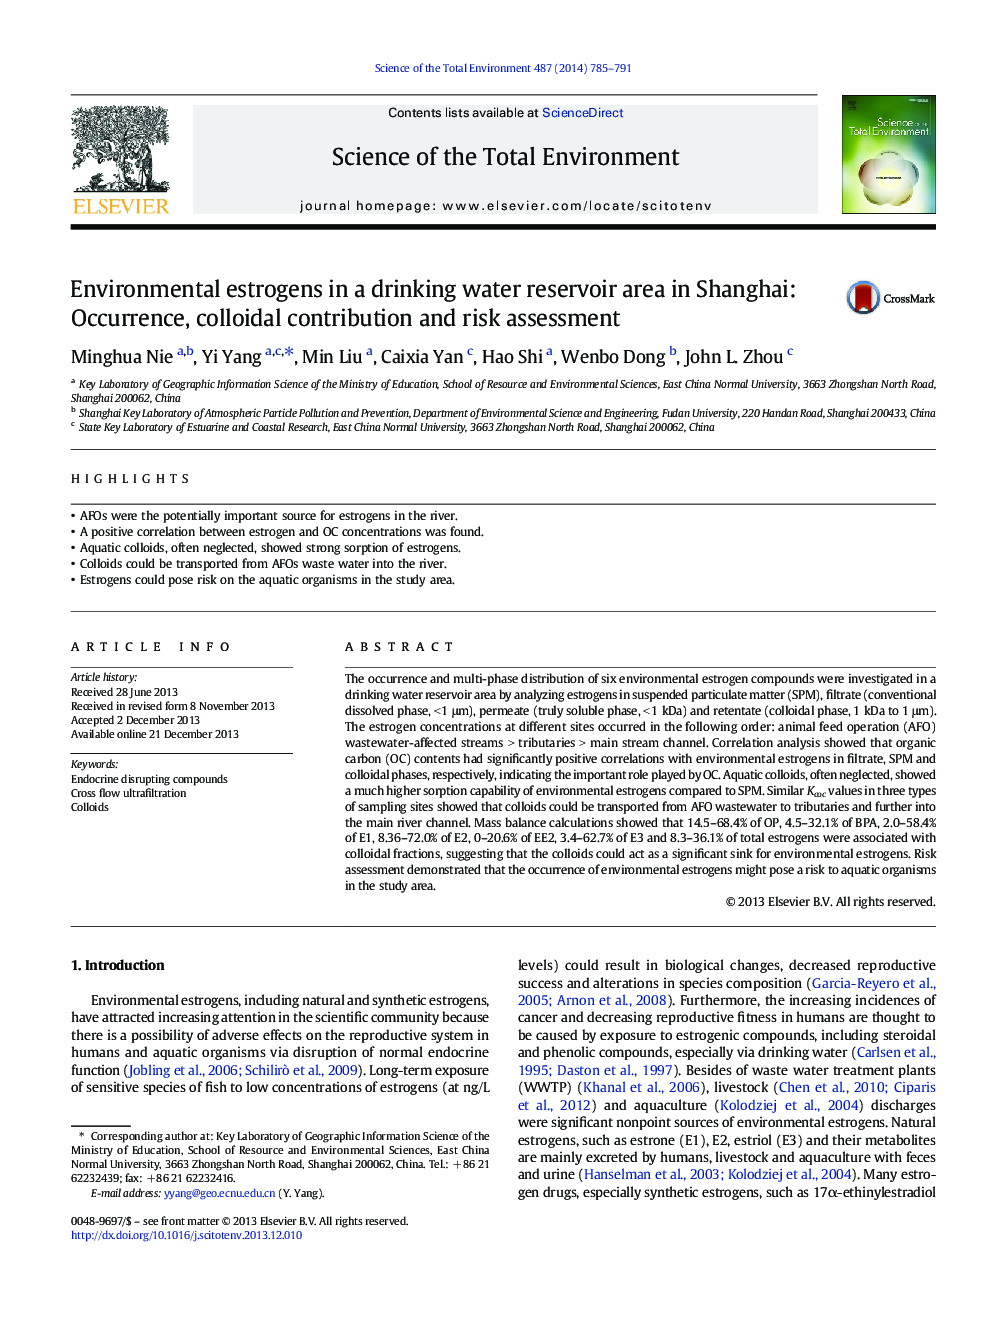 استروژن های محیطی در ناحیه مخزن آب آشامیدنی در شانگهای: پدیده، سهم کلوئیدی و ارزیابی خطر 